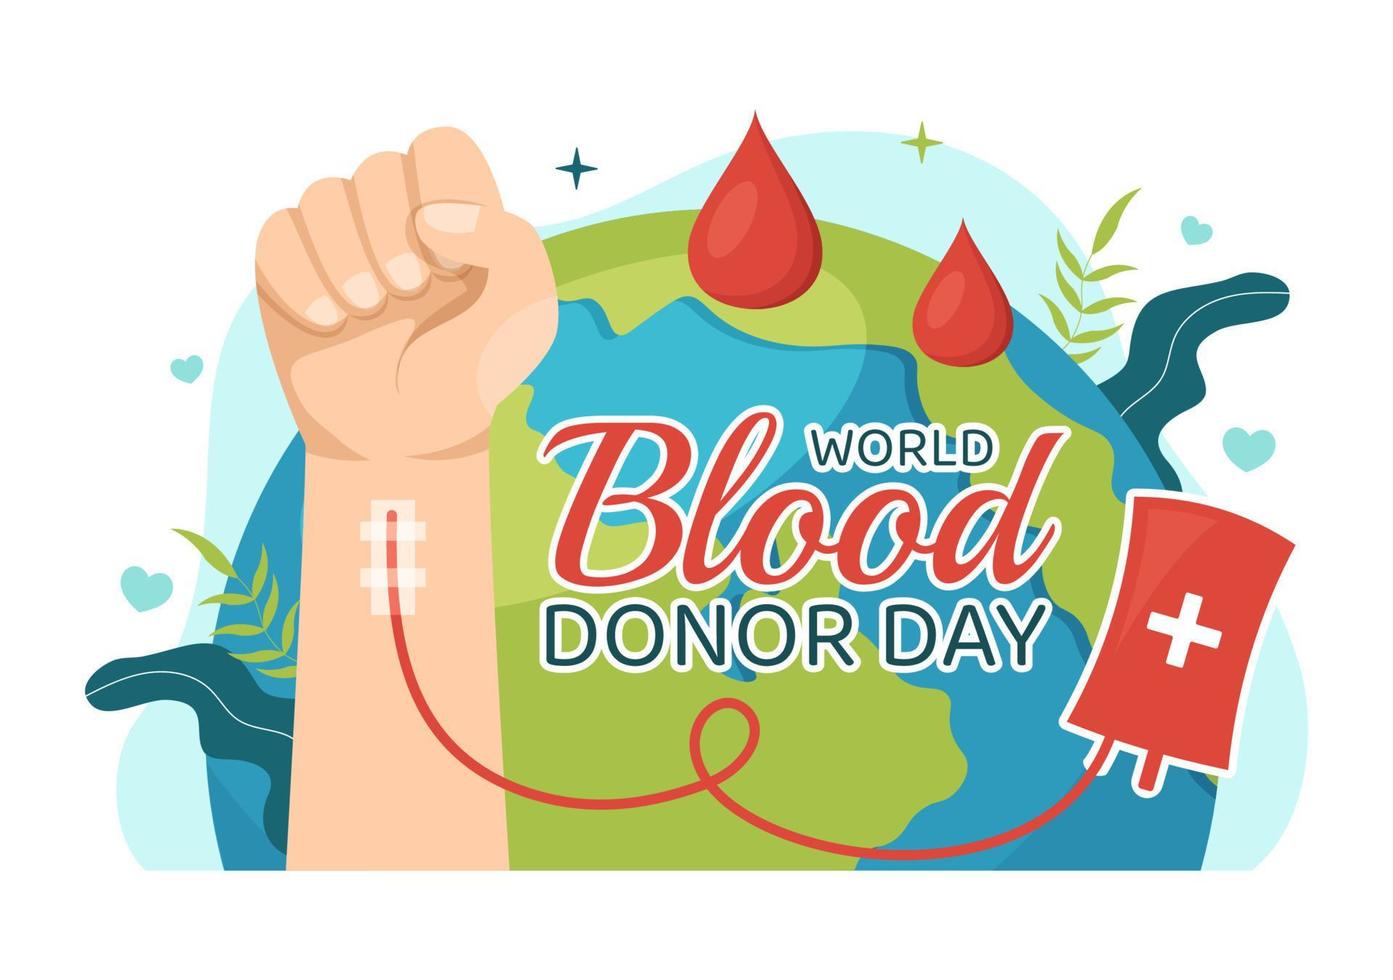 monde du sang donneur journée sur juin 14 illustration avec Humain donné sang pour donner le bénéficiaire dans enregistrer la vie plat dessin animé main tiré modèles vecteur